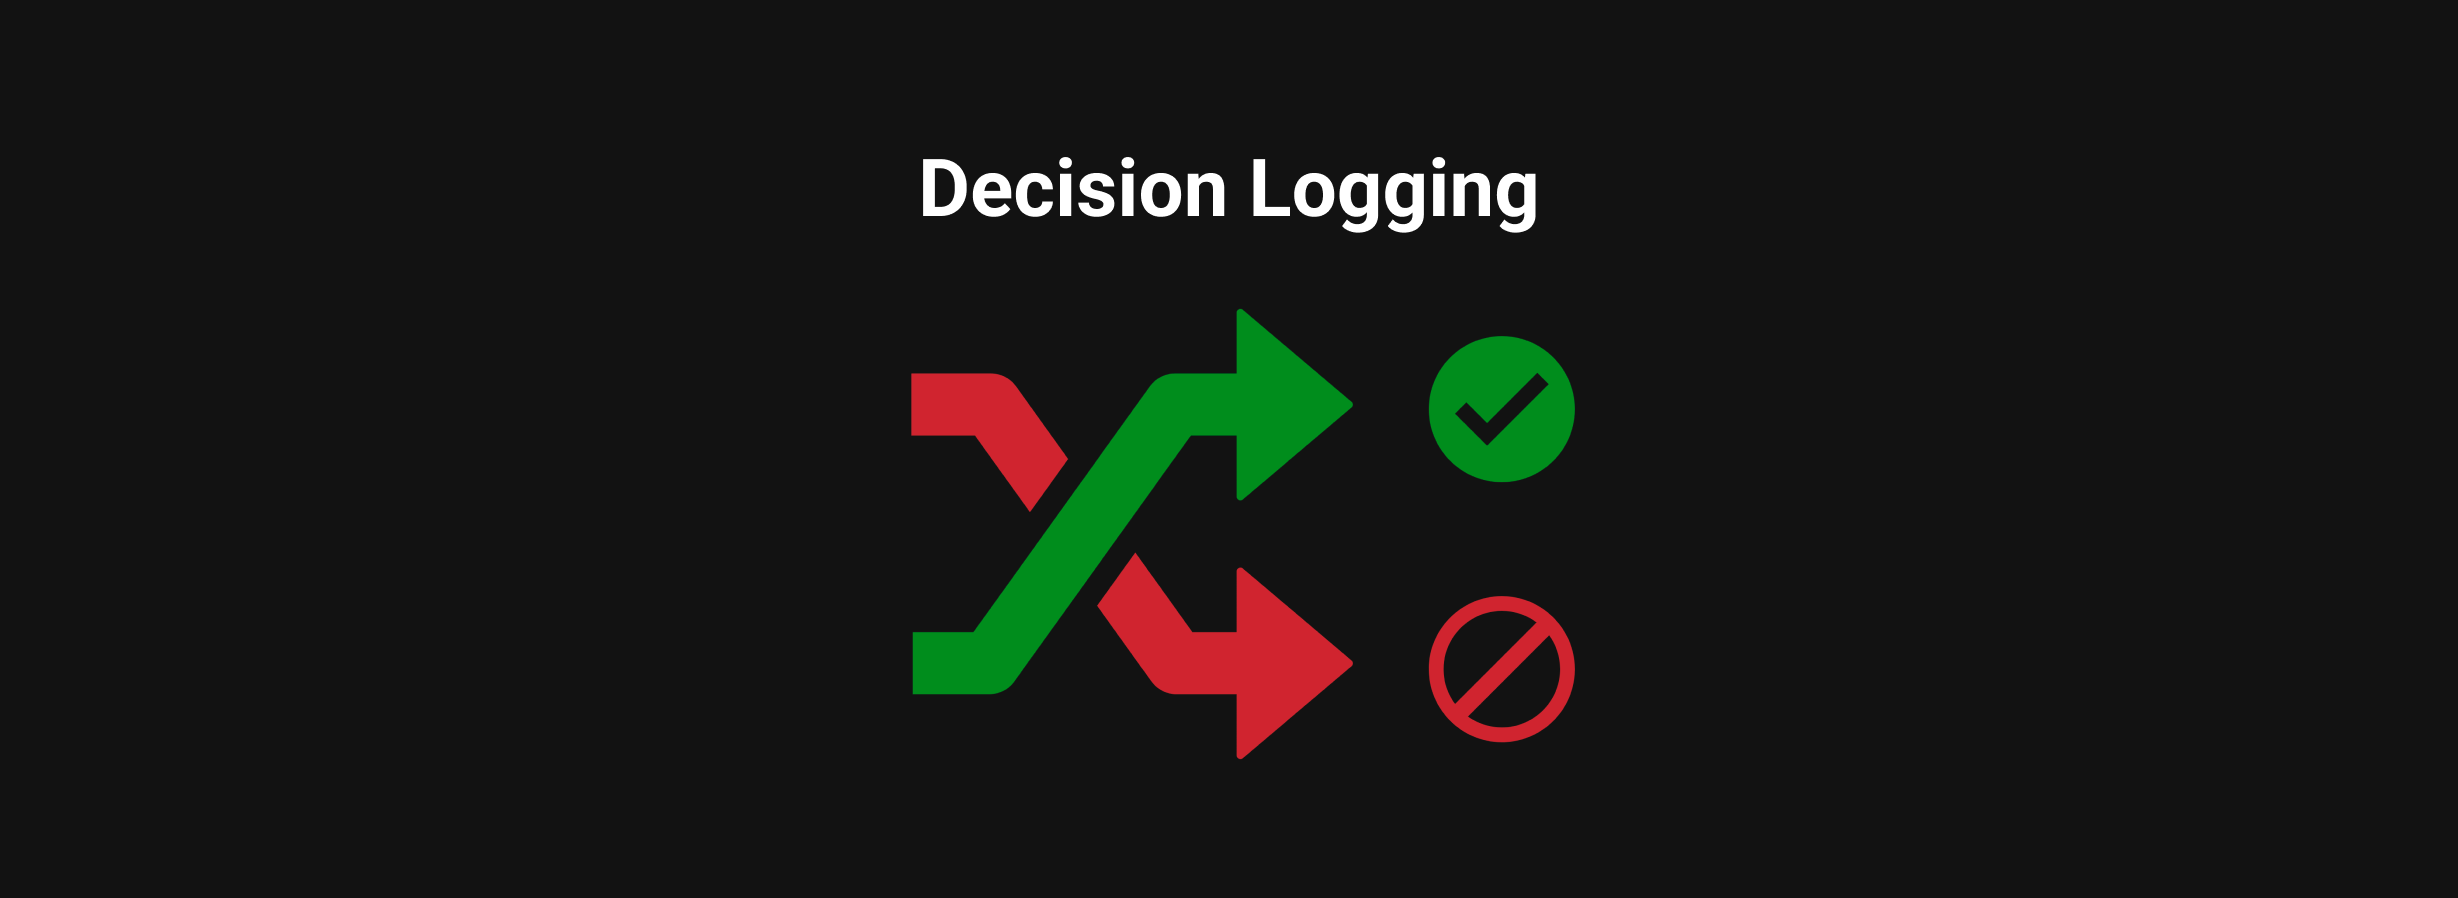 decision logging